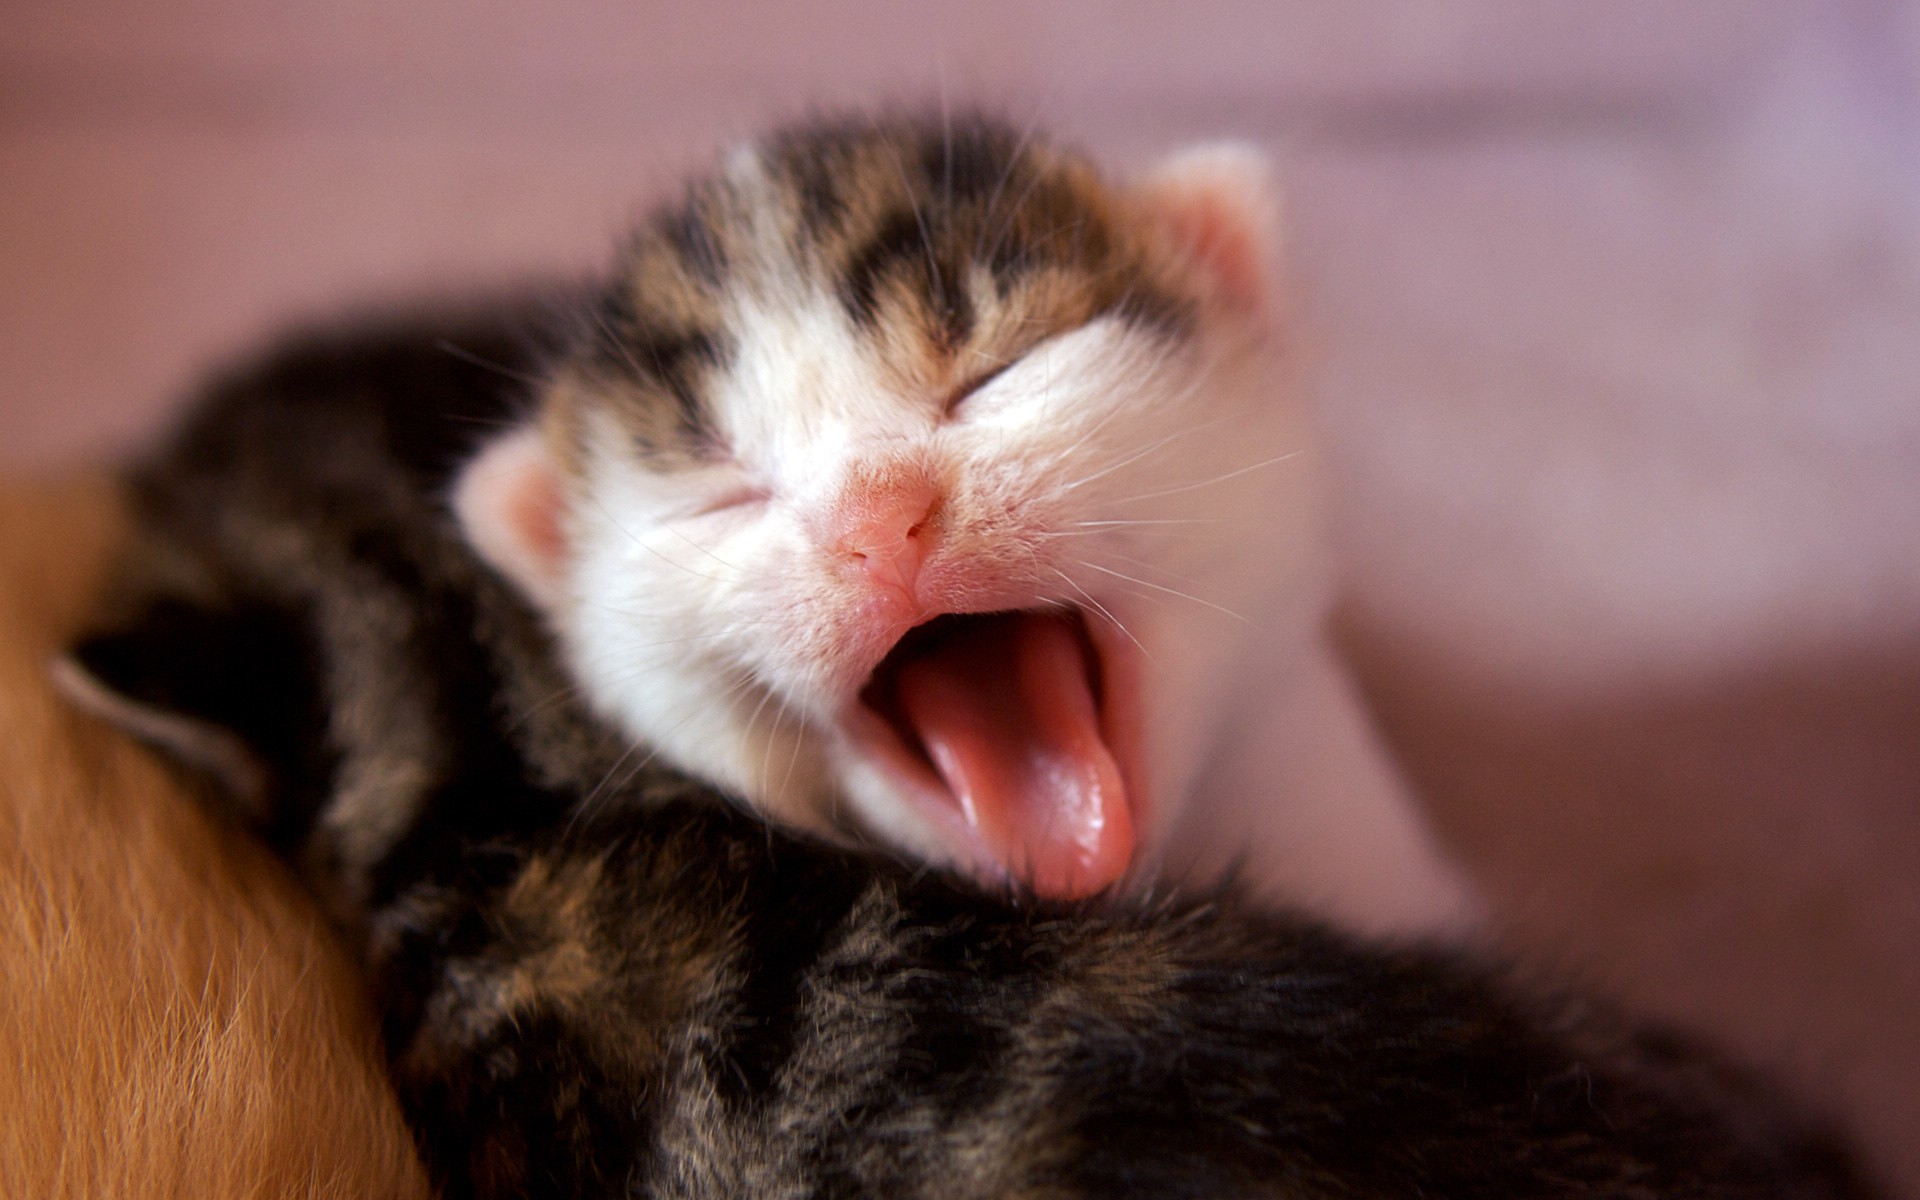 Kitty yawn